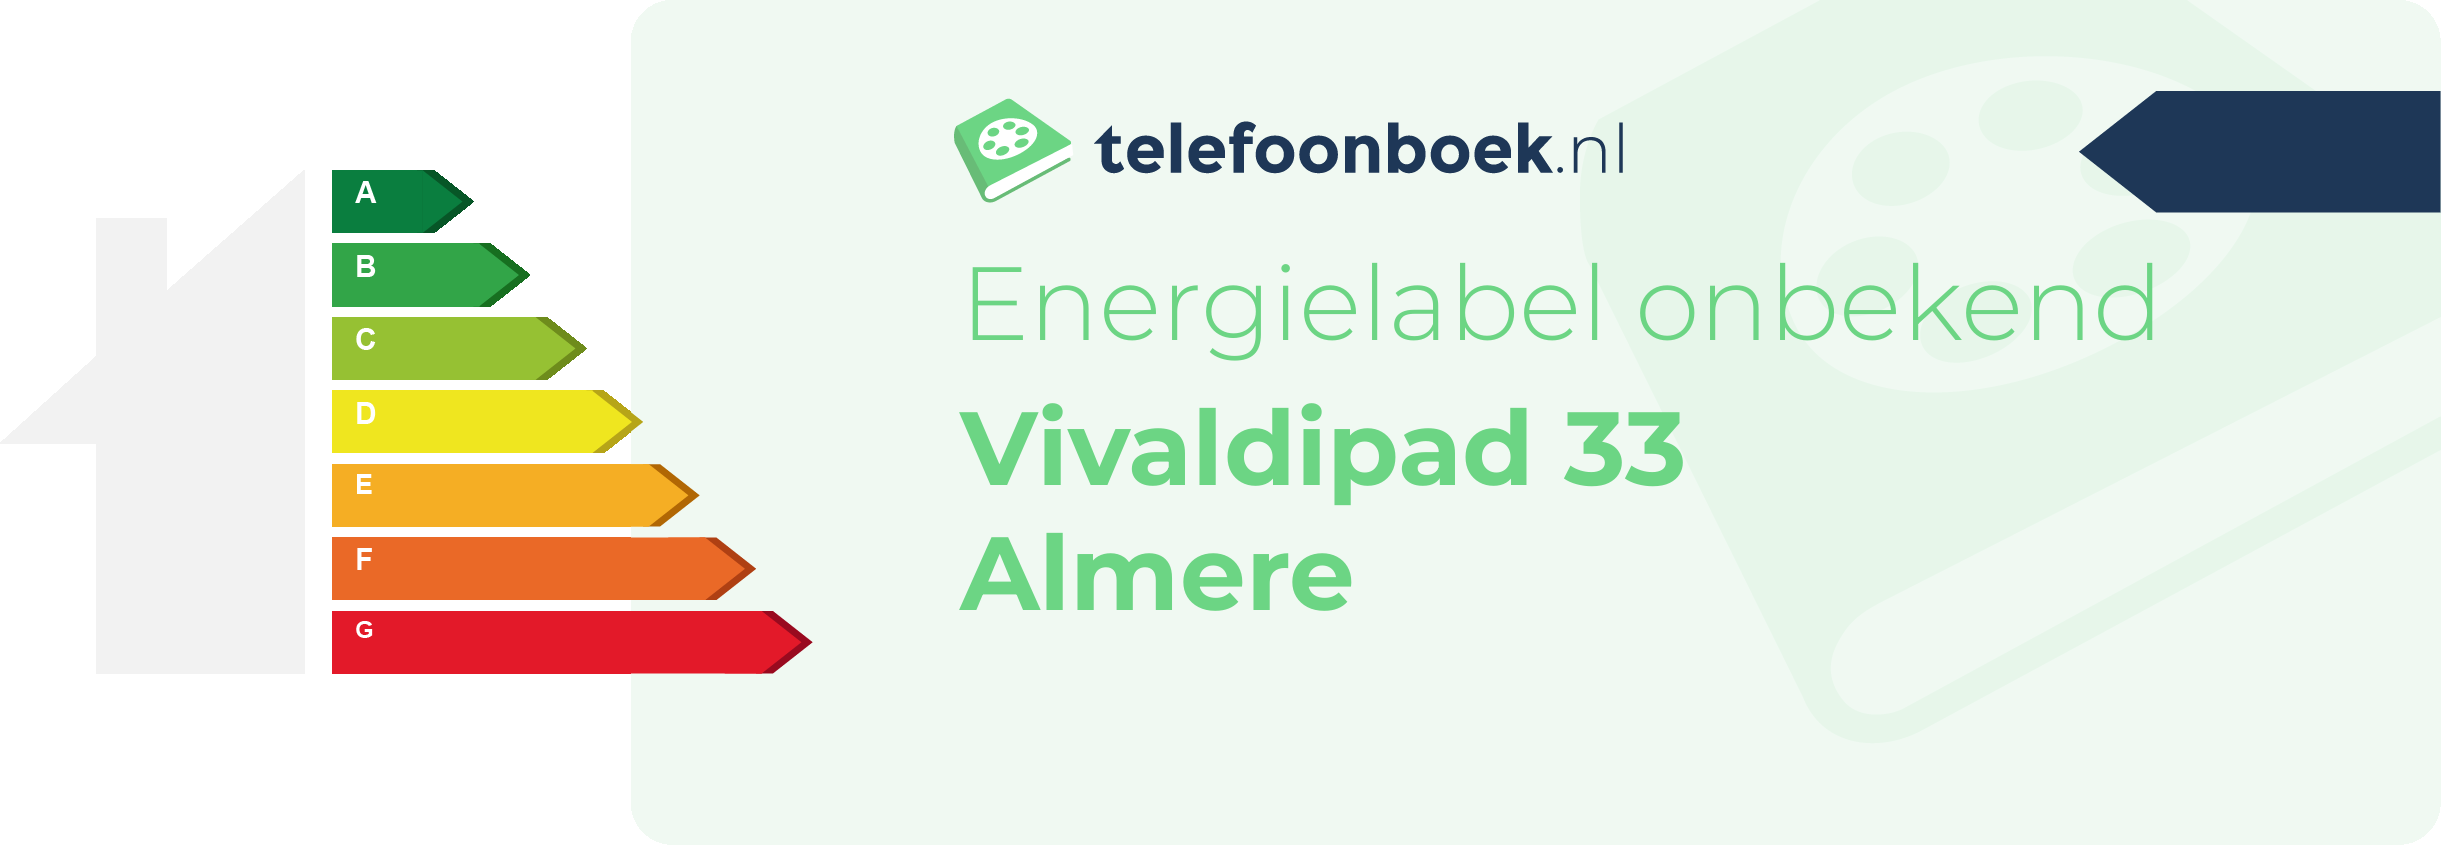 Energielabel Vivaldipad 33 Almere